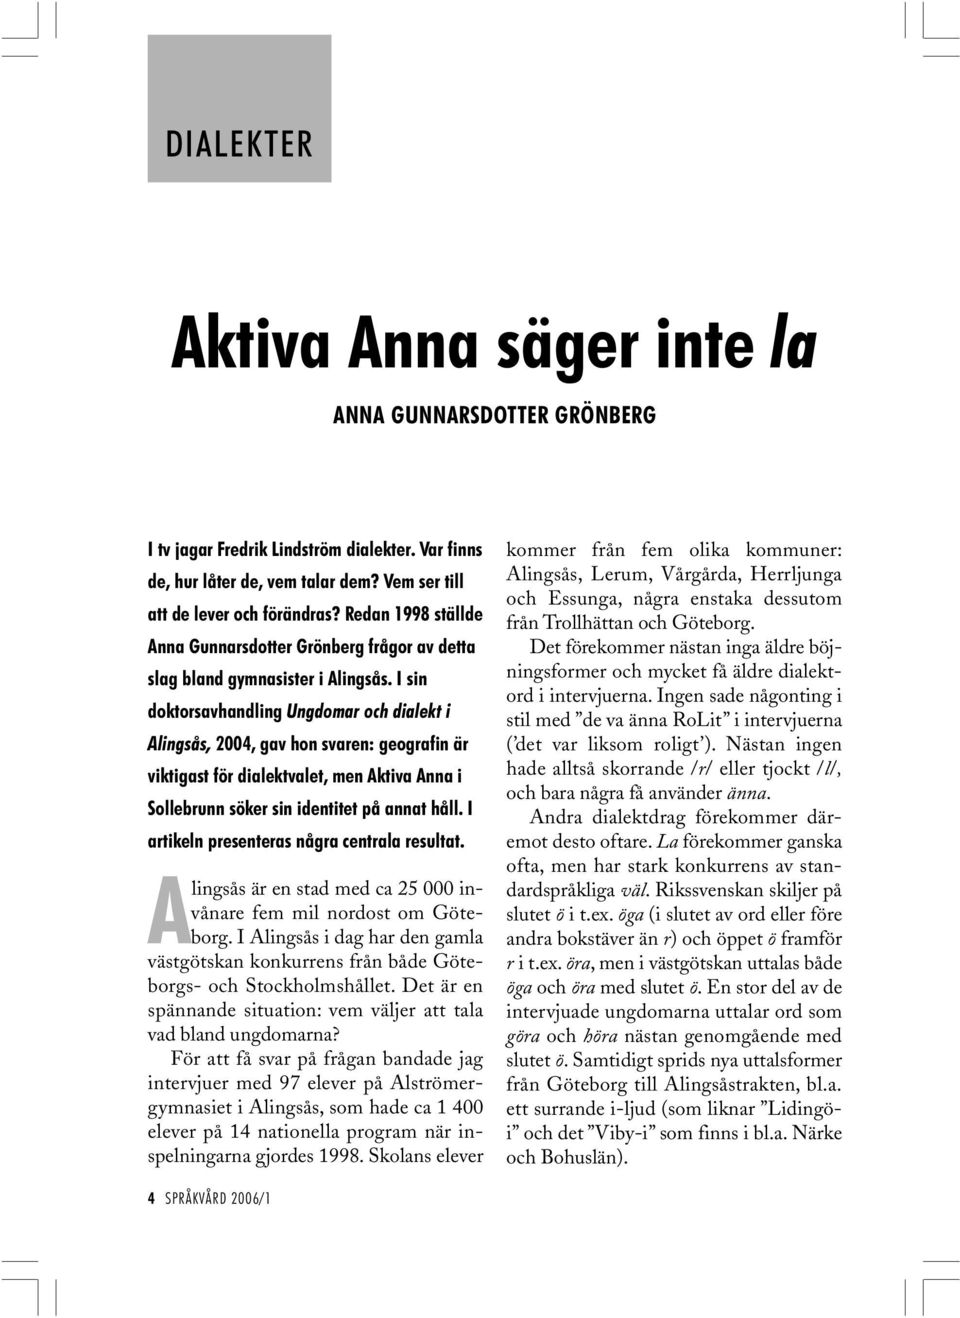 I sin doktorsavhandling Ungdomar och dialekt i Alingsås, 2004, gav hon svaren: geografin är viktigast för dialektvalet, men Aktiva Anna i Sollebrunn söker sin identitet på annat håll.